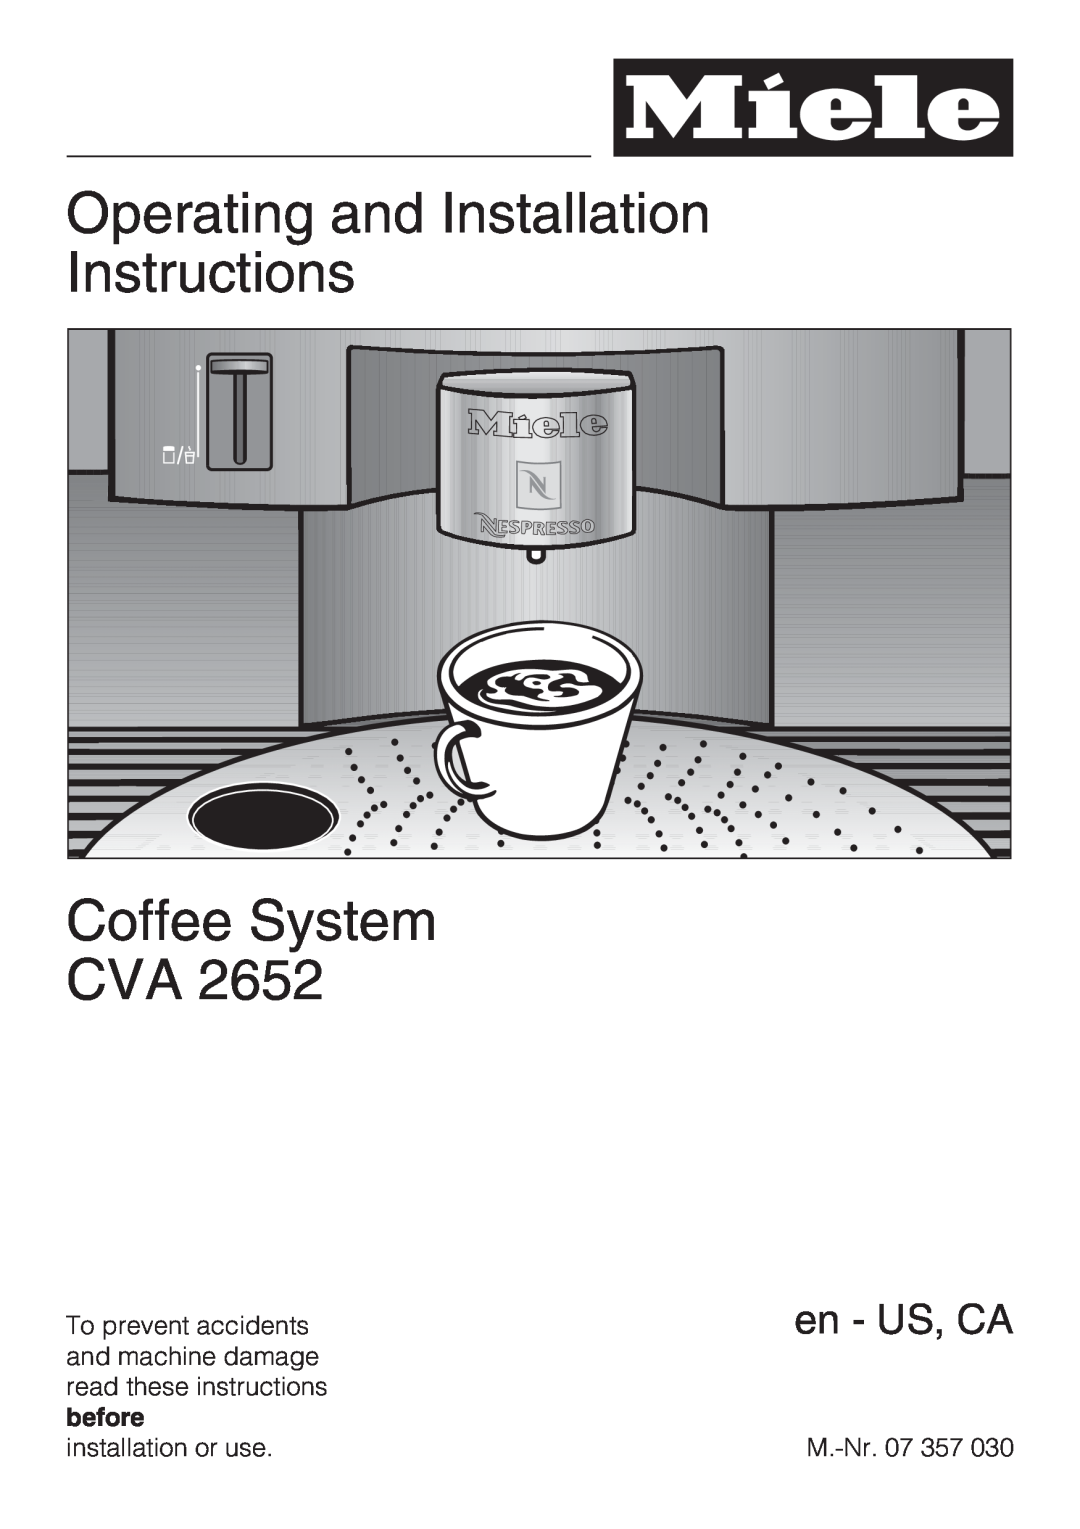 Miele CVA 2652 installation instructions Operating and Installation Instructions, Coffee System CVA, en - US, CA 